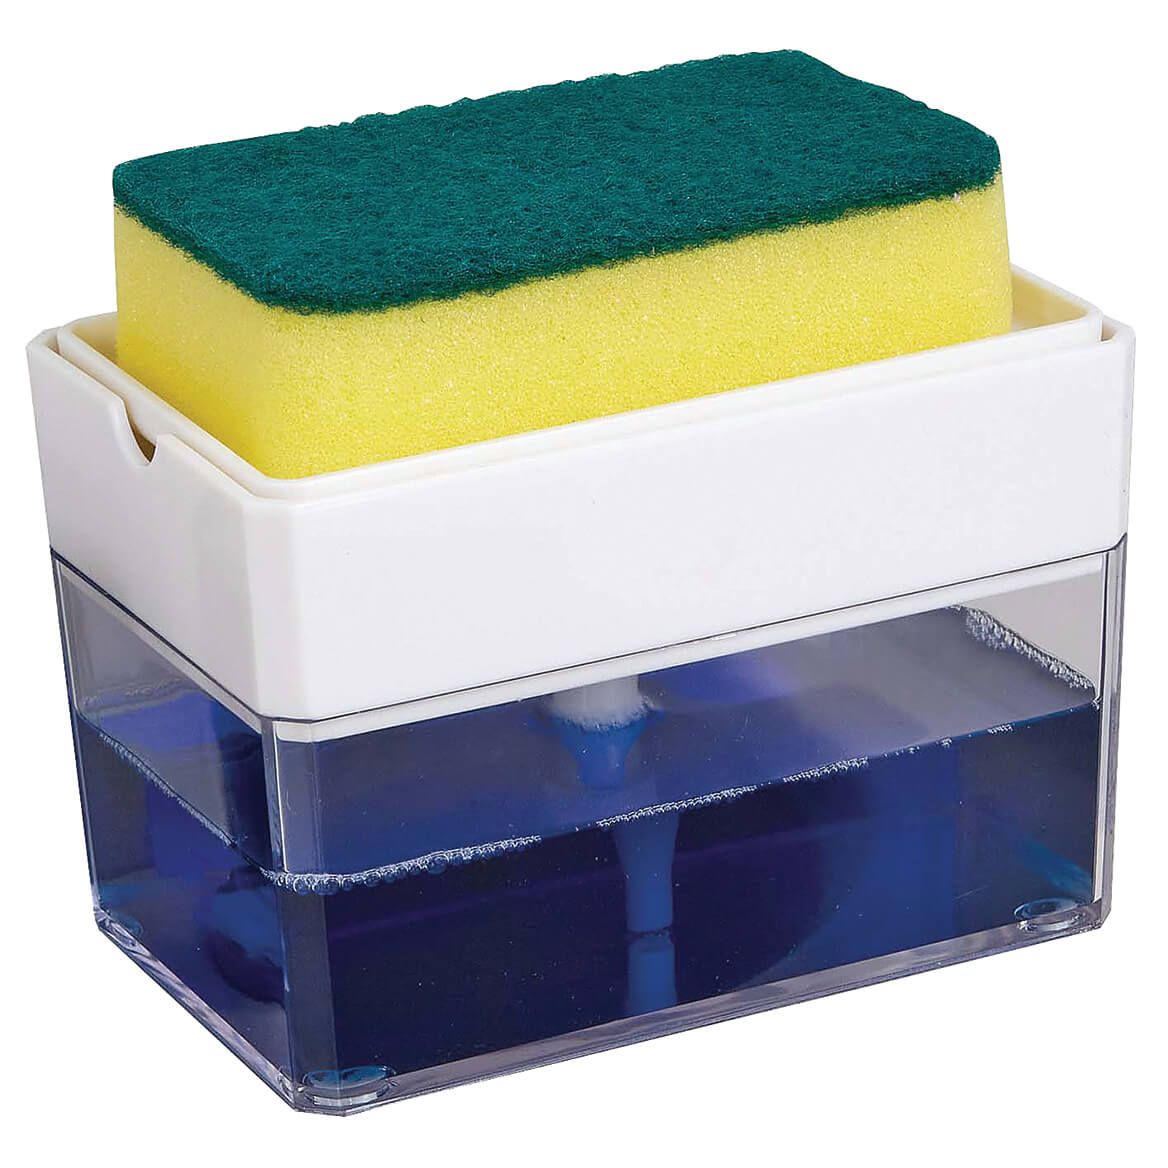 2 in 1 Soap Dispenser with Sponge + '-' + 375121